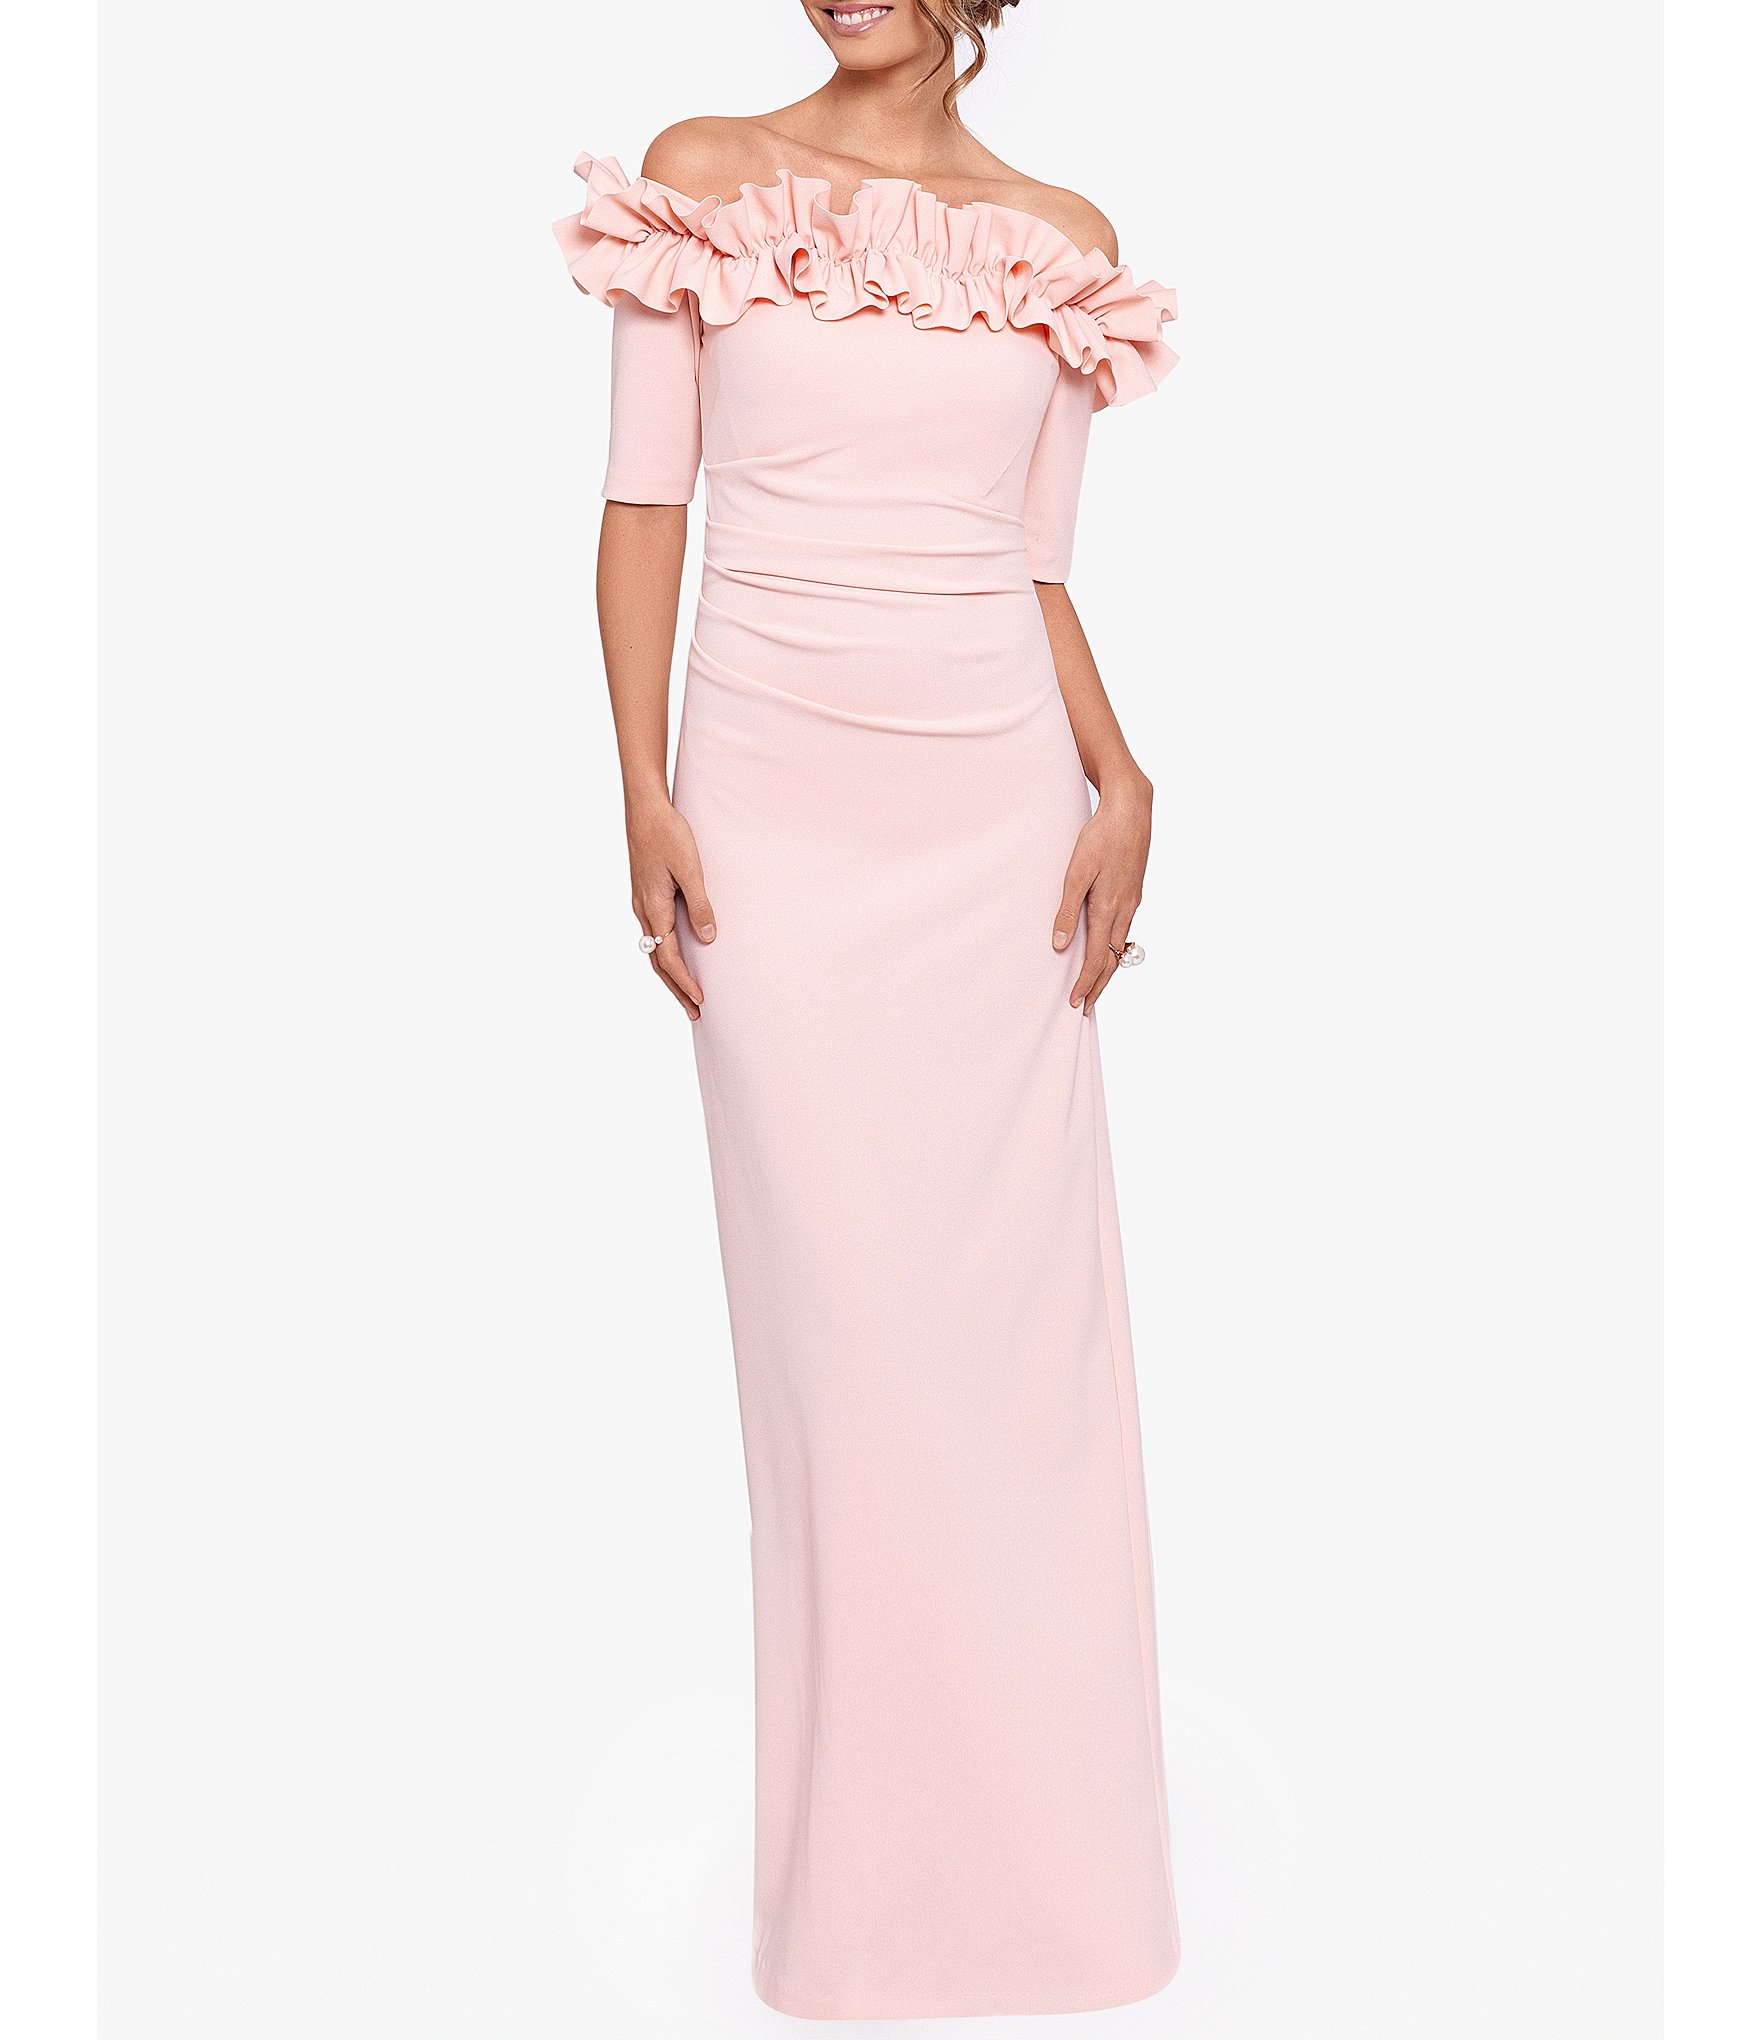 Short Sleeve Dresses For Women | Dillard's